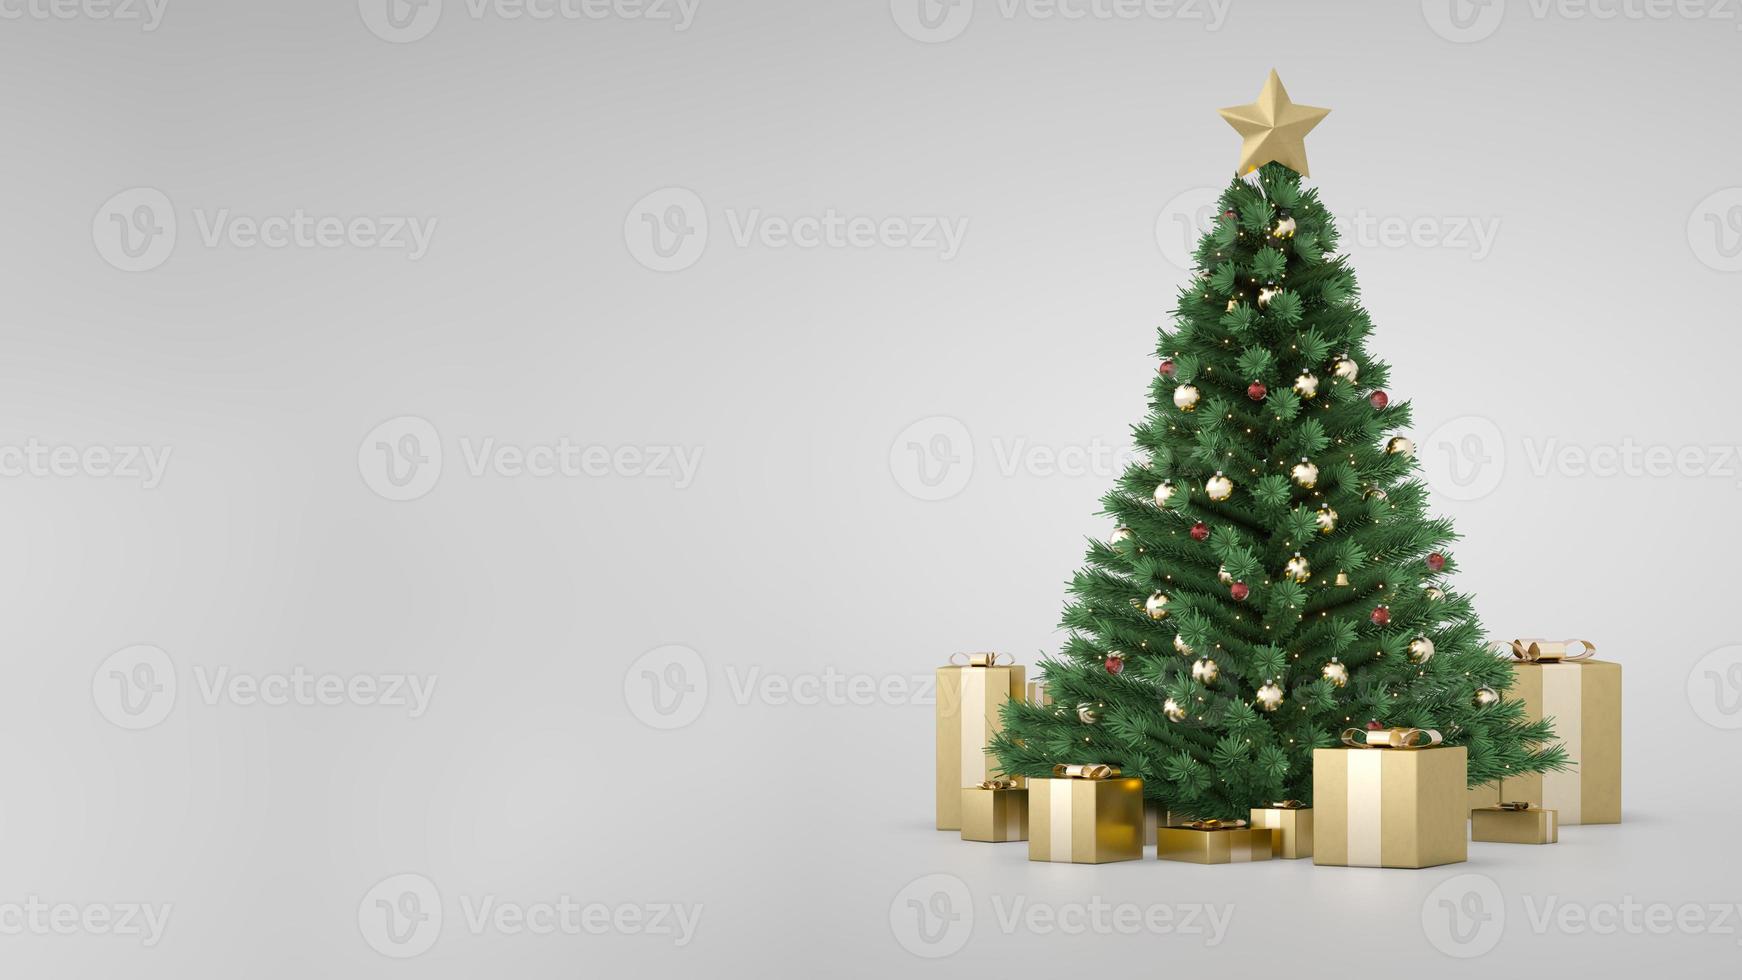 geweldige luxe kerstboom met gouden geschenkdozen en zijkopieerruimte. 3D render. kerstboom flitser. vrolijk kerstfeest en een gelukkig nieuwjaar. Kerstcadeaus onder de boom. decoratieve grenen spar. foto